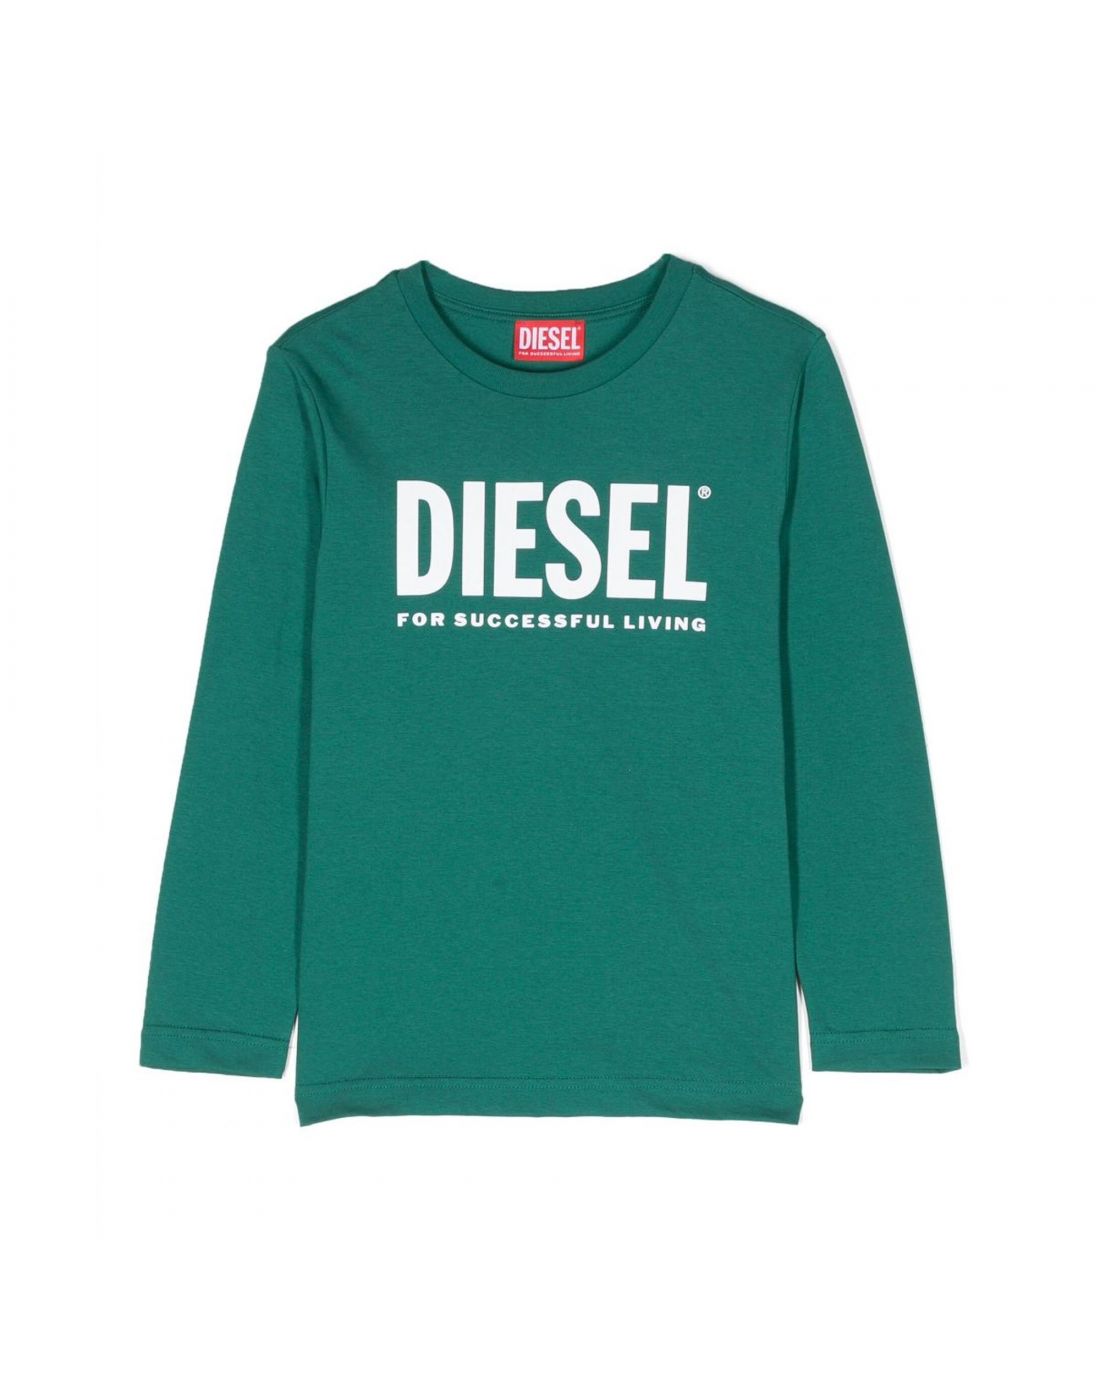 Παιδική Μπλούζα Diesel, Diesel, 23260008 | LapinKids.com | LAPIN KIDS